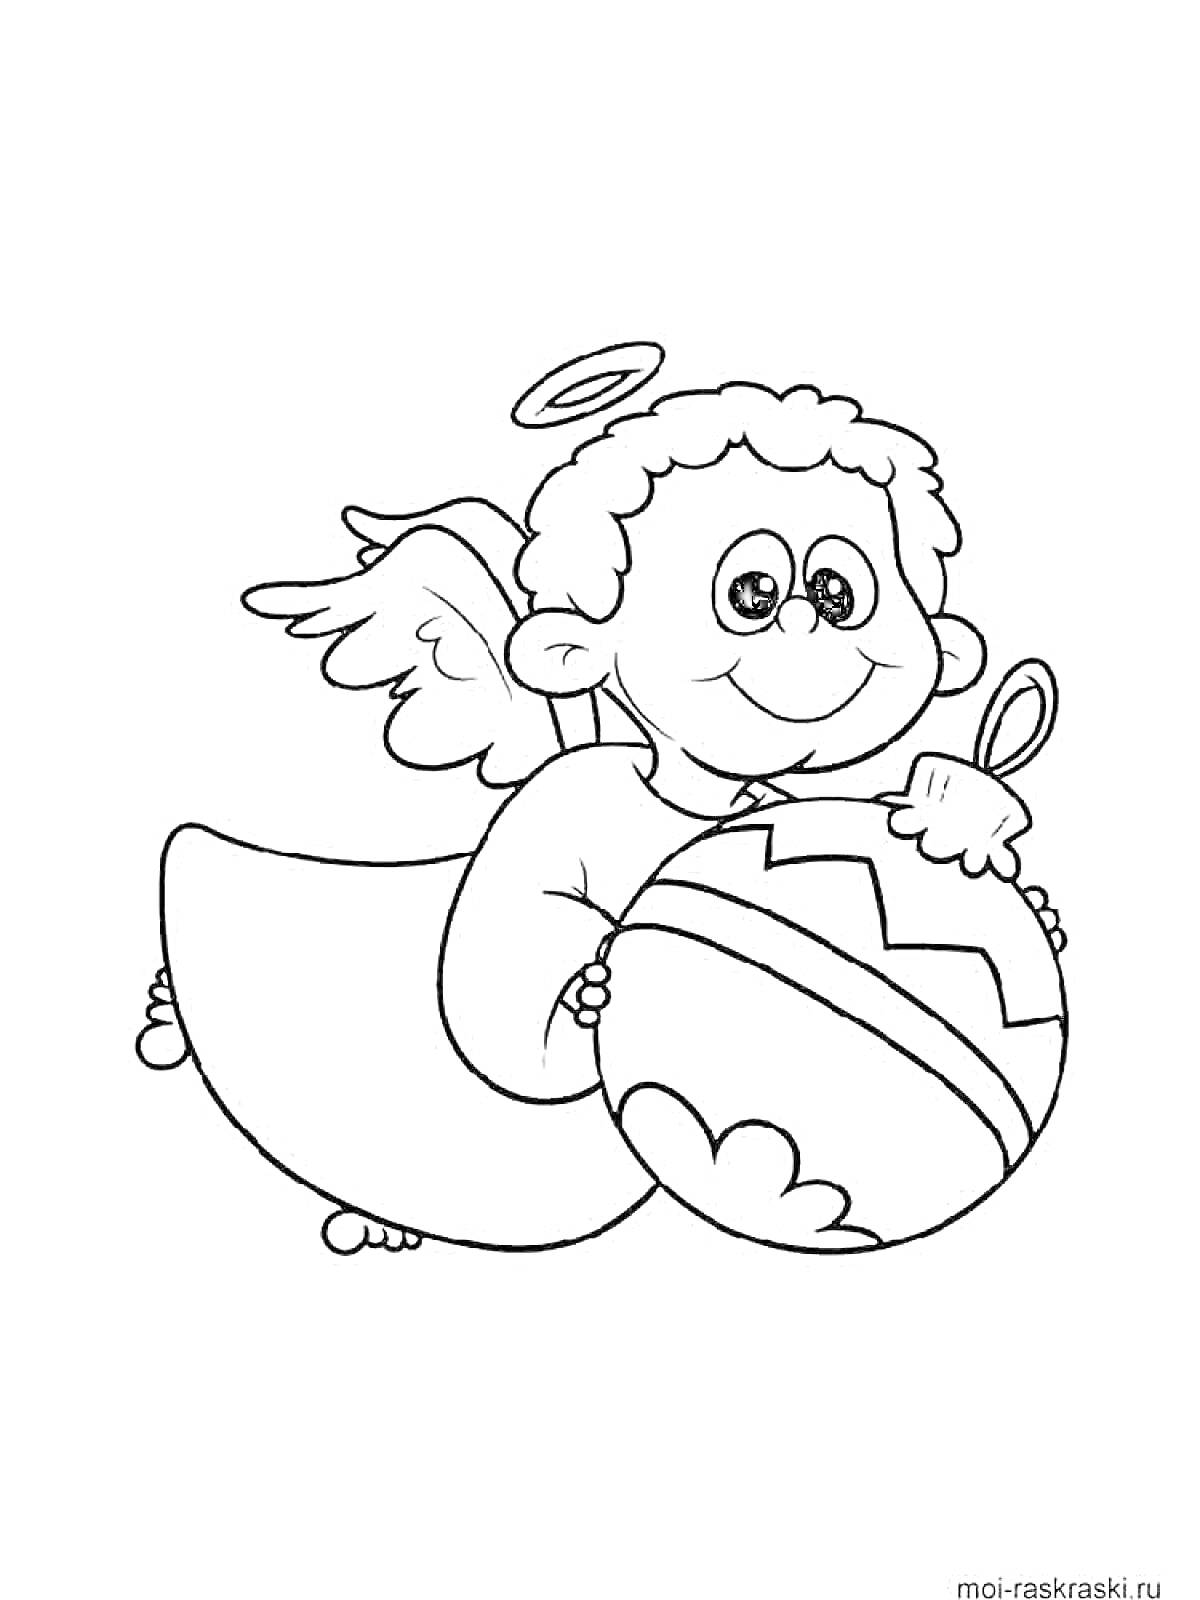 Раскраска Ангел с нимбом и крыльями, держащий большое украшенное яйцо